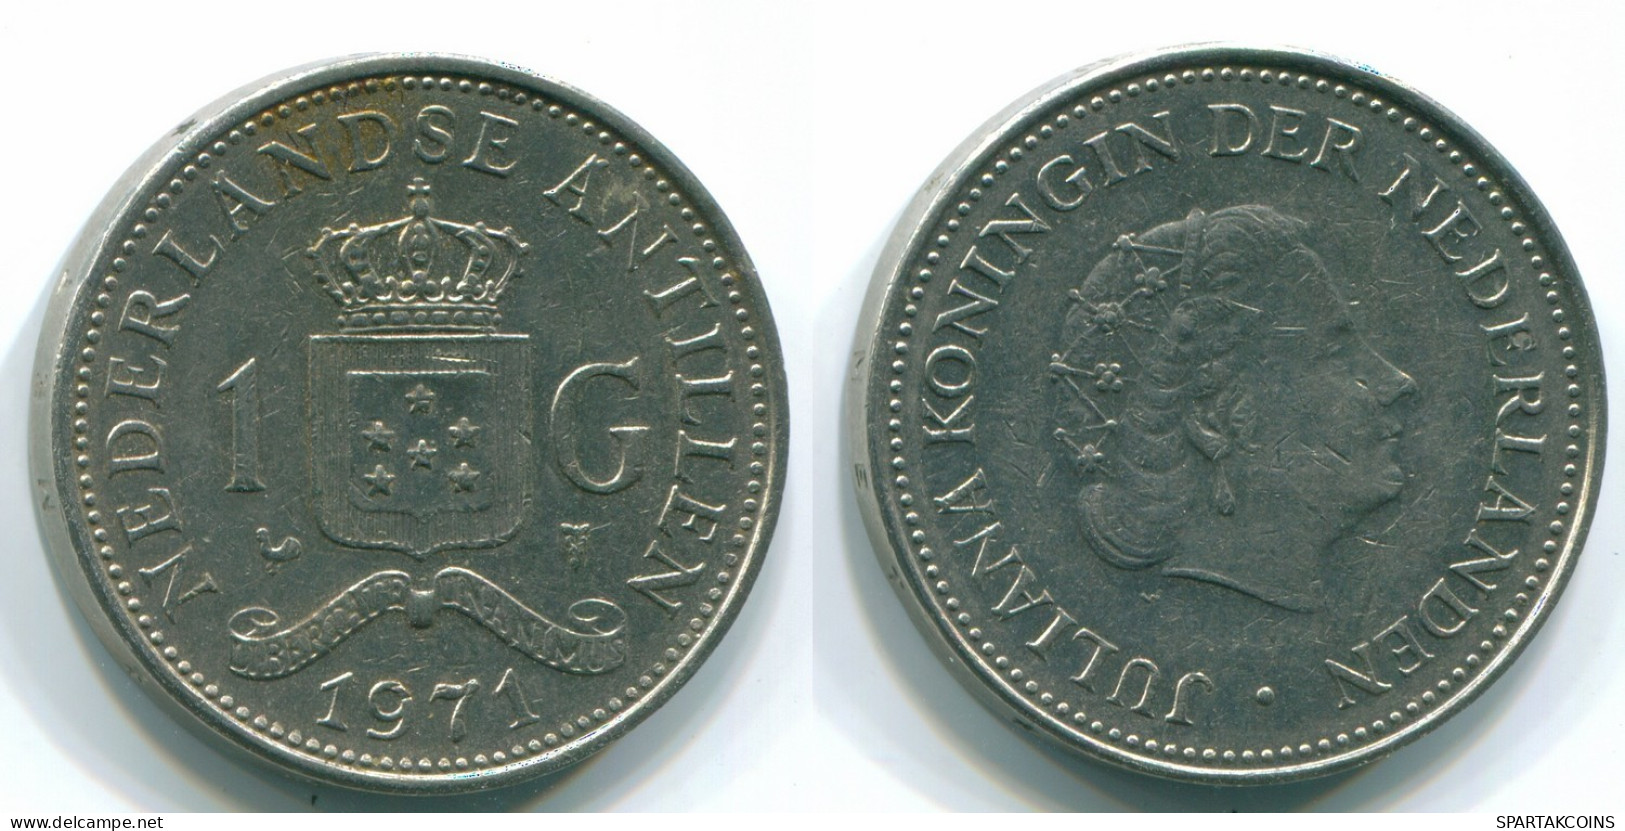 1 GULDEN 1971 NETHERLANDS ANTILLES Nickel Colonial Coin #S12012.U.A - Antillas Neerlandesas